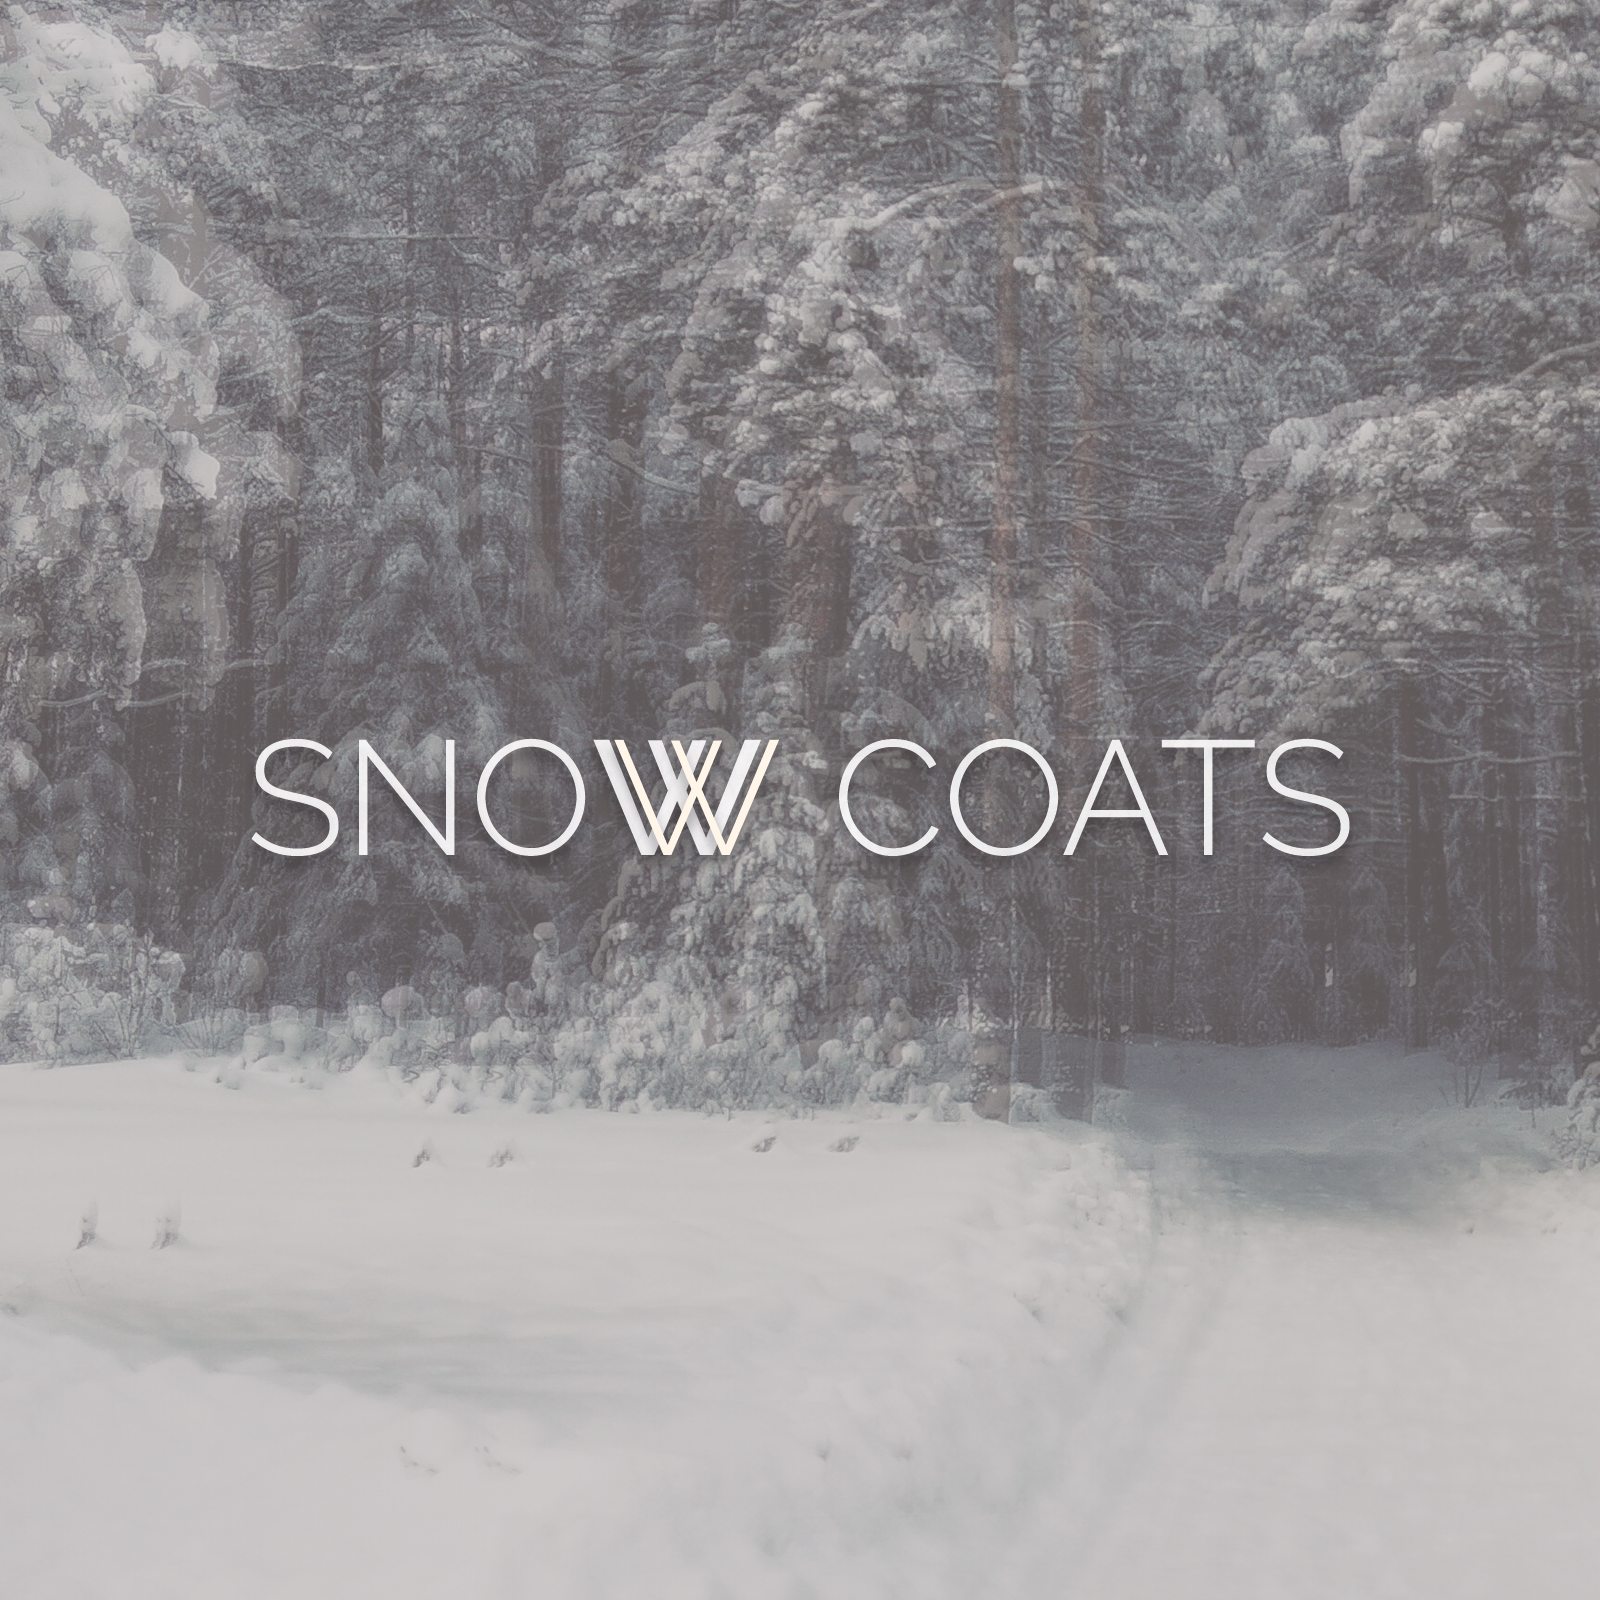 Snow Coats